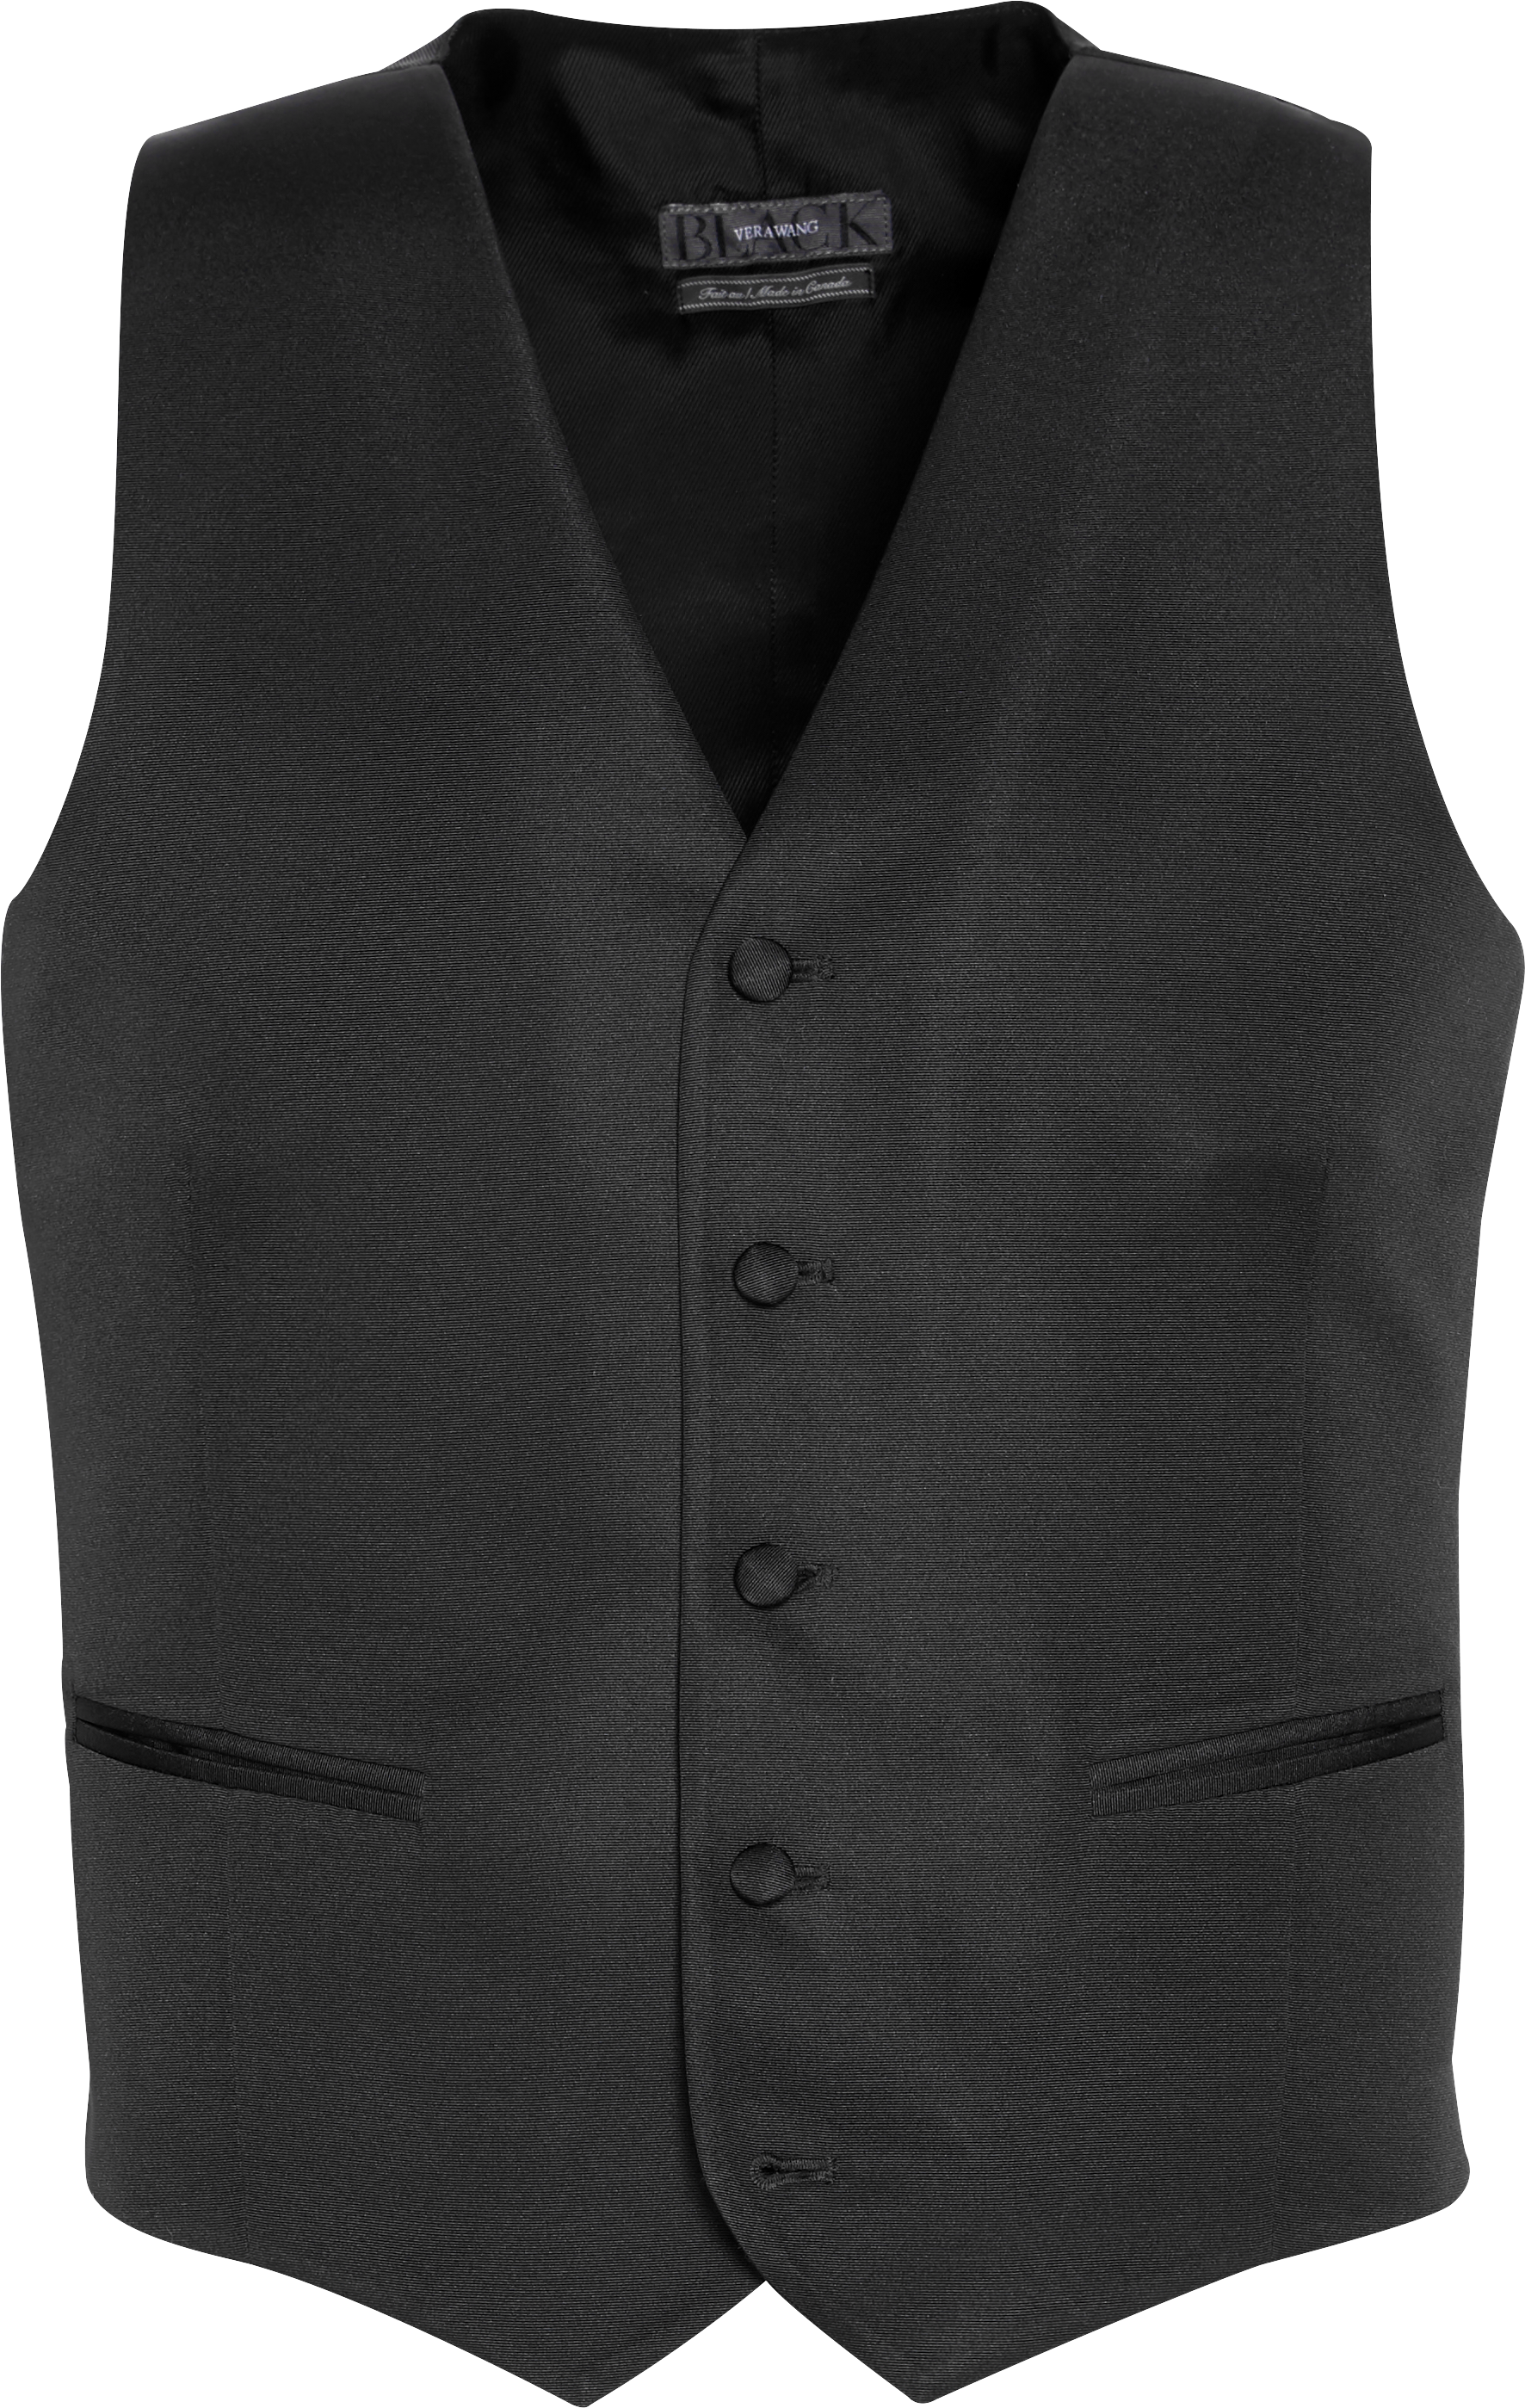 BLACK by Vera Wang Black Slim Fit Tuxedo Vest - Men's Suit Separate ...